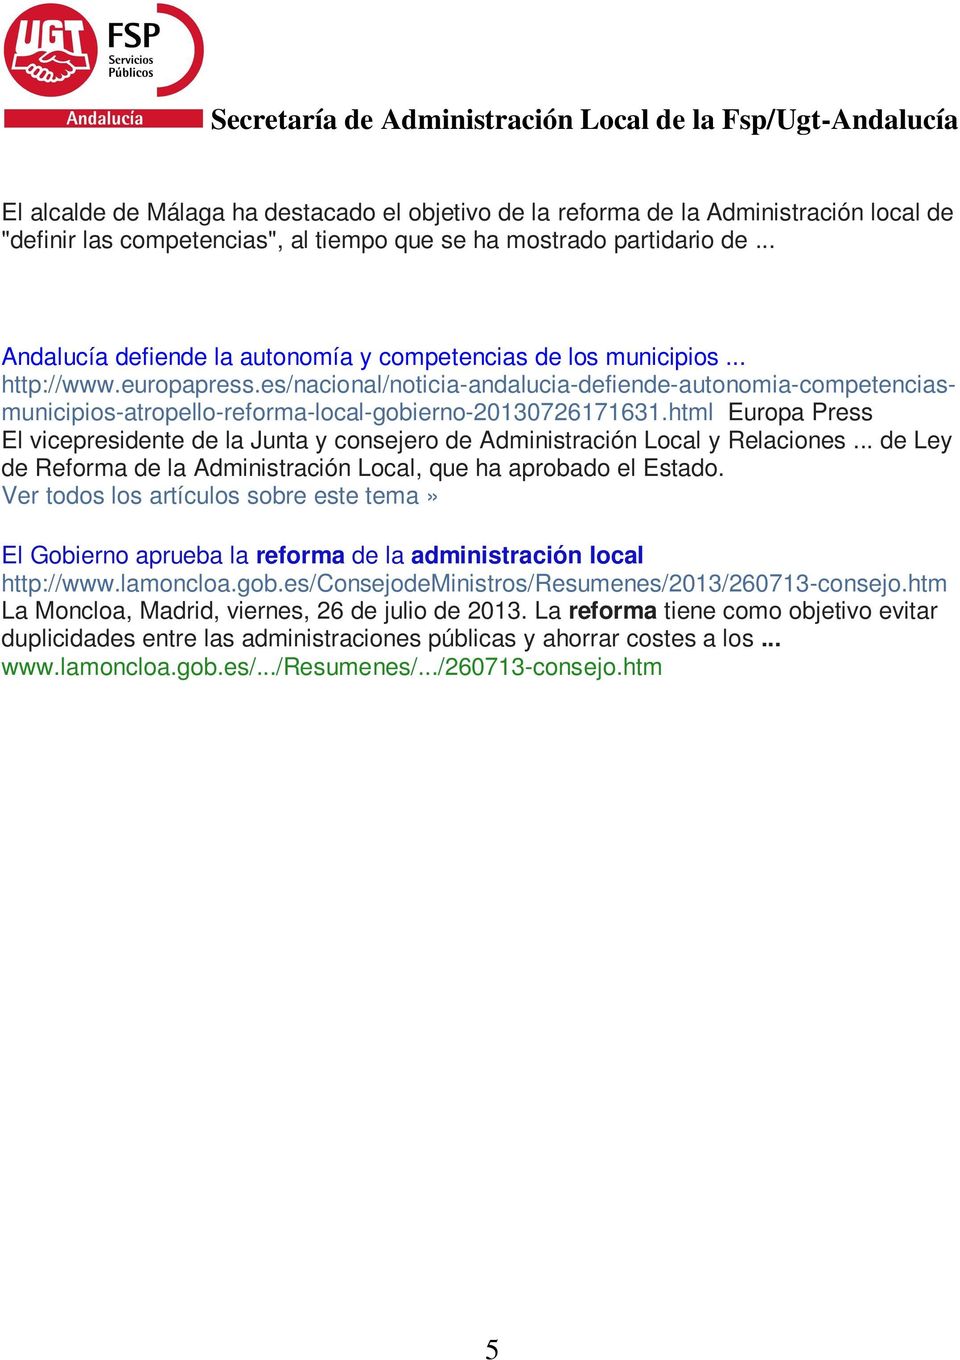 es/nacional/noticia-andalucia-defiende-autonomia-competenciasmunicipios-atropello-reforma-local-gobierno-20130726171631.